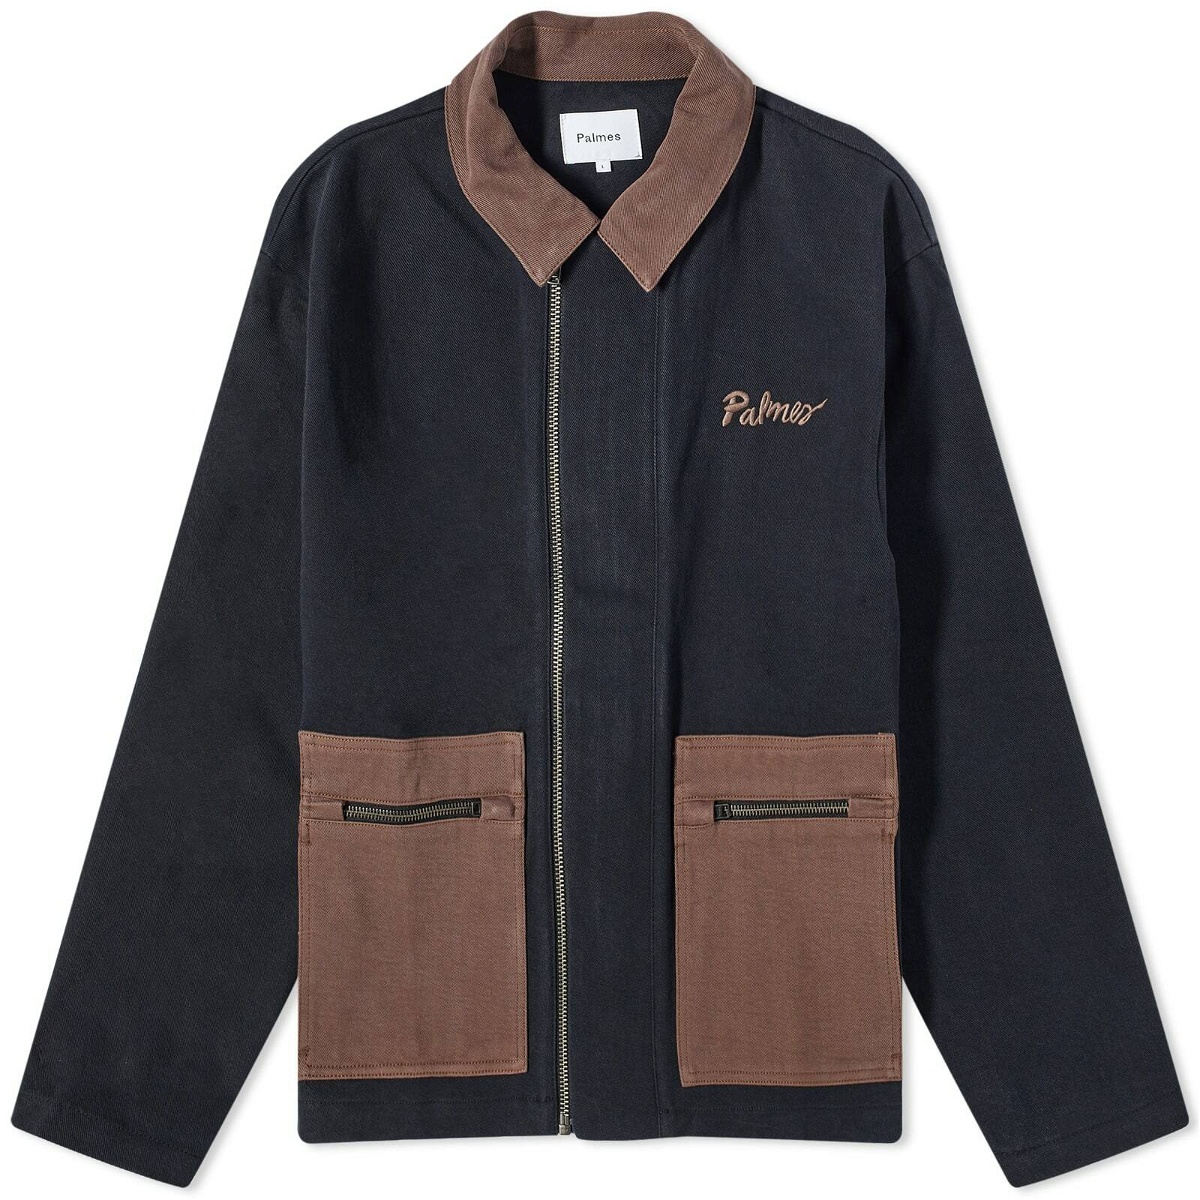 Palmes Men's Double Zip Jacket in Black/Brown